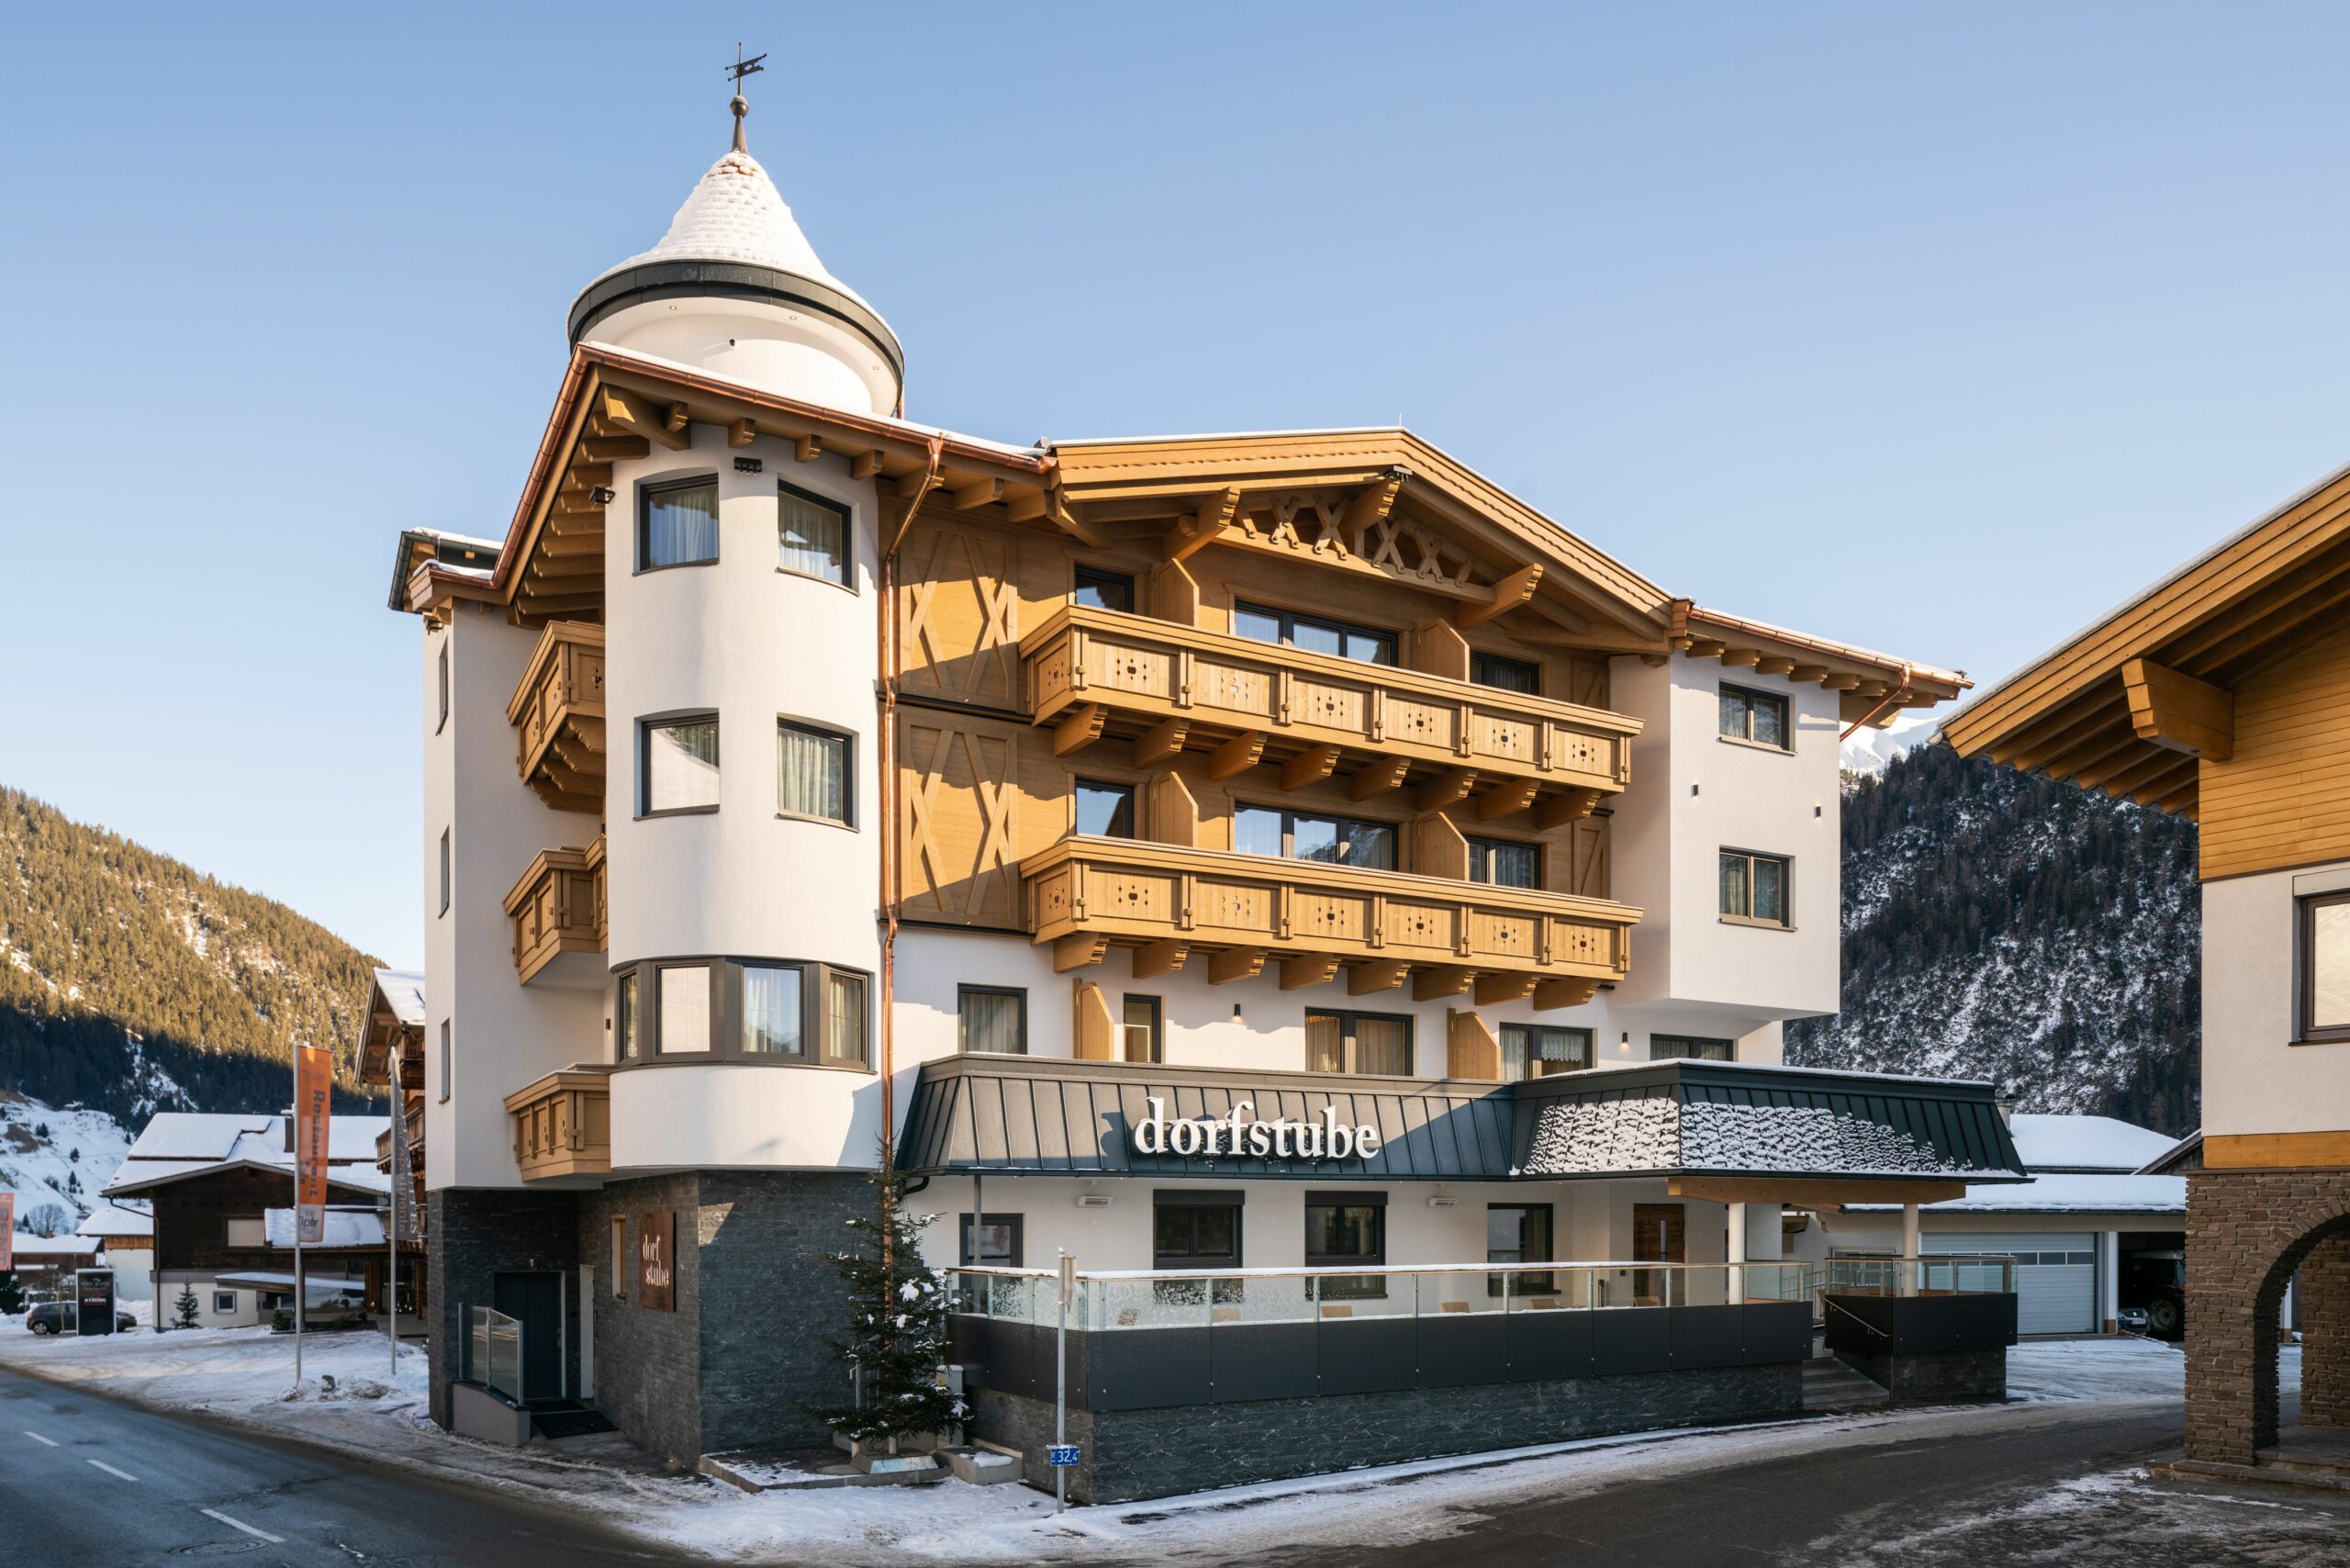 Hotel Dorfstube in Holzgau - Winter aussen